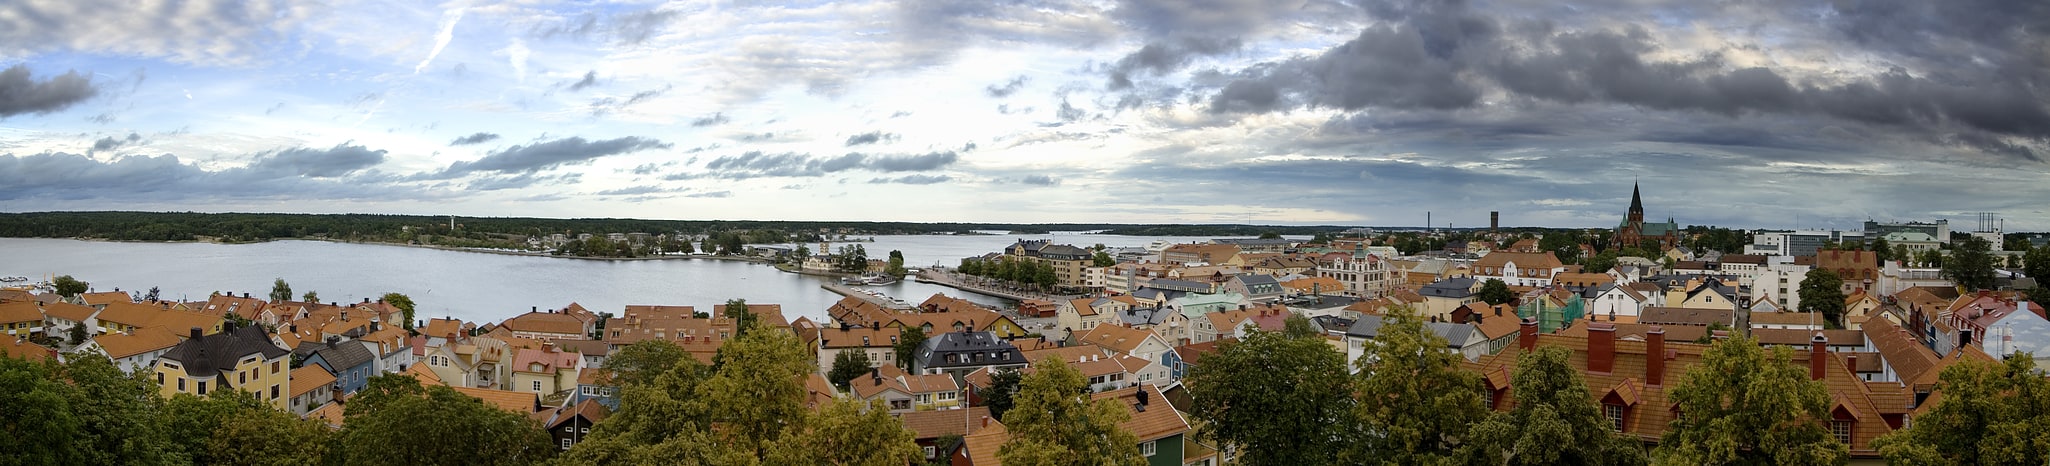 Västervik, Sweden